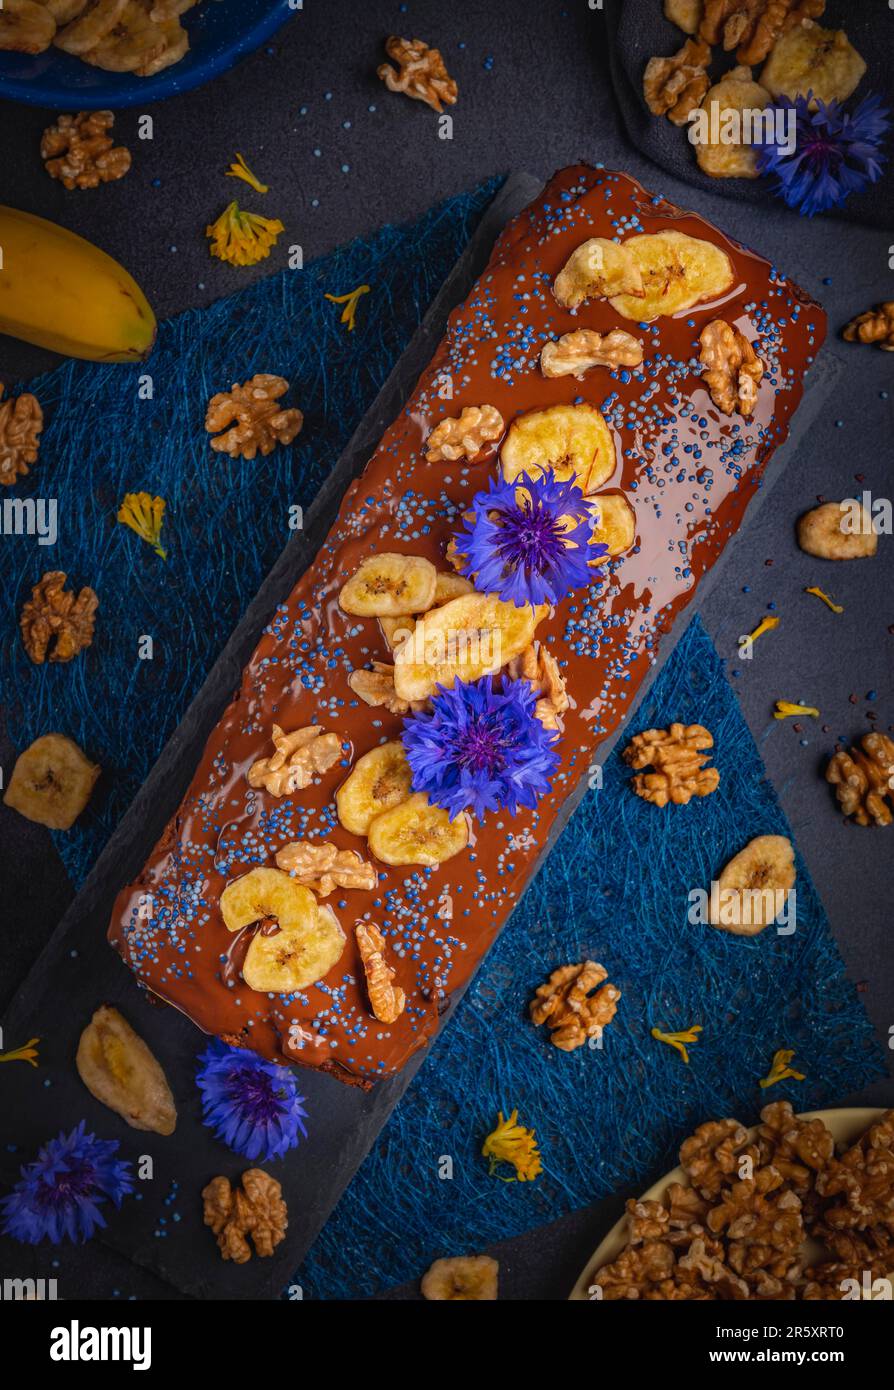 Pane di banana con cioccolato, patatine di banana e noci, decorato con fiori di mais, vegan, fotografia alimentare Foto Stock